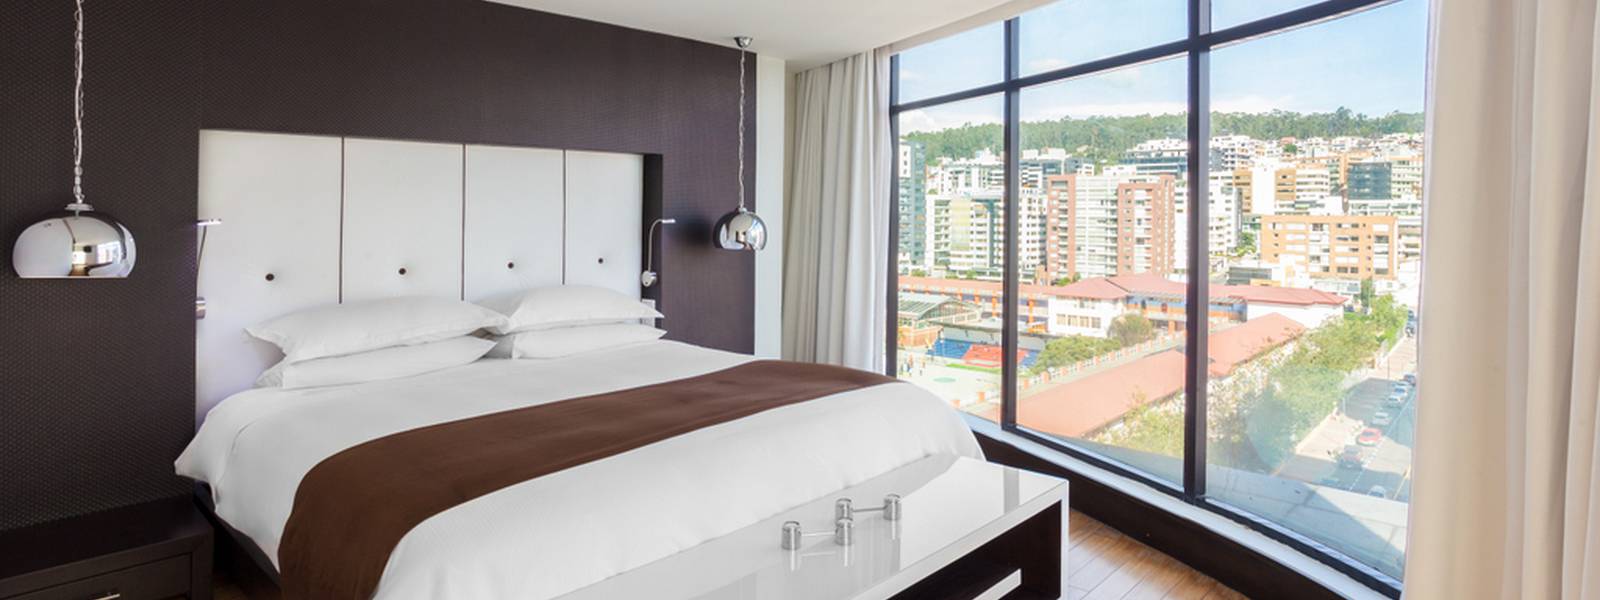 Room - Leparc Hotel - Quito